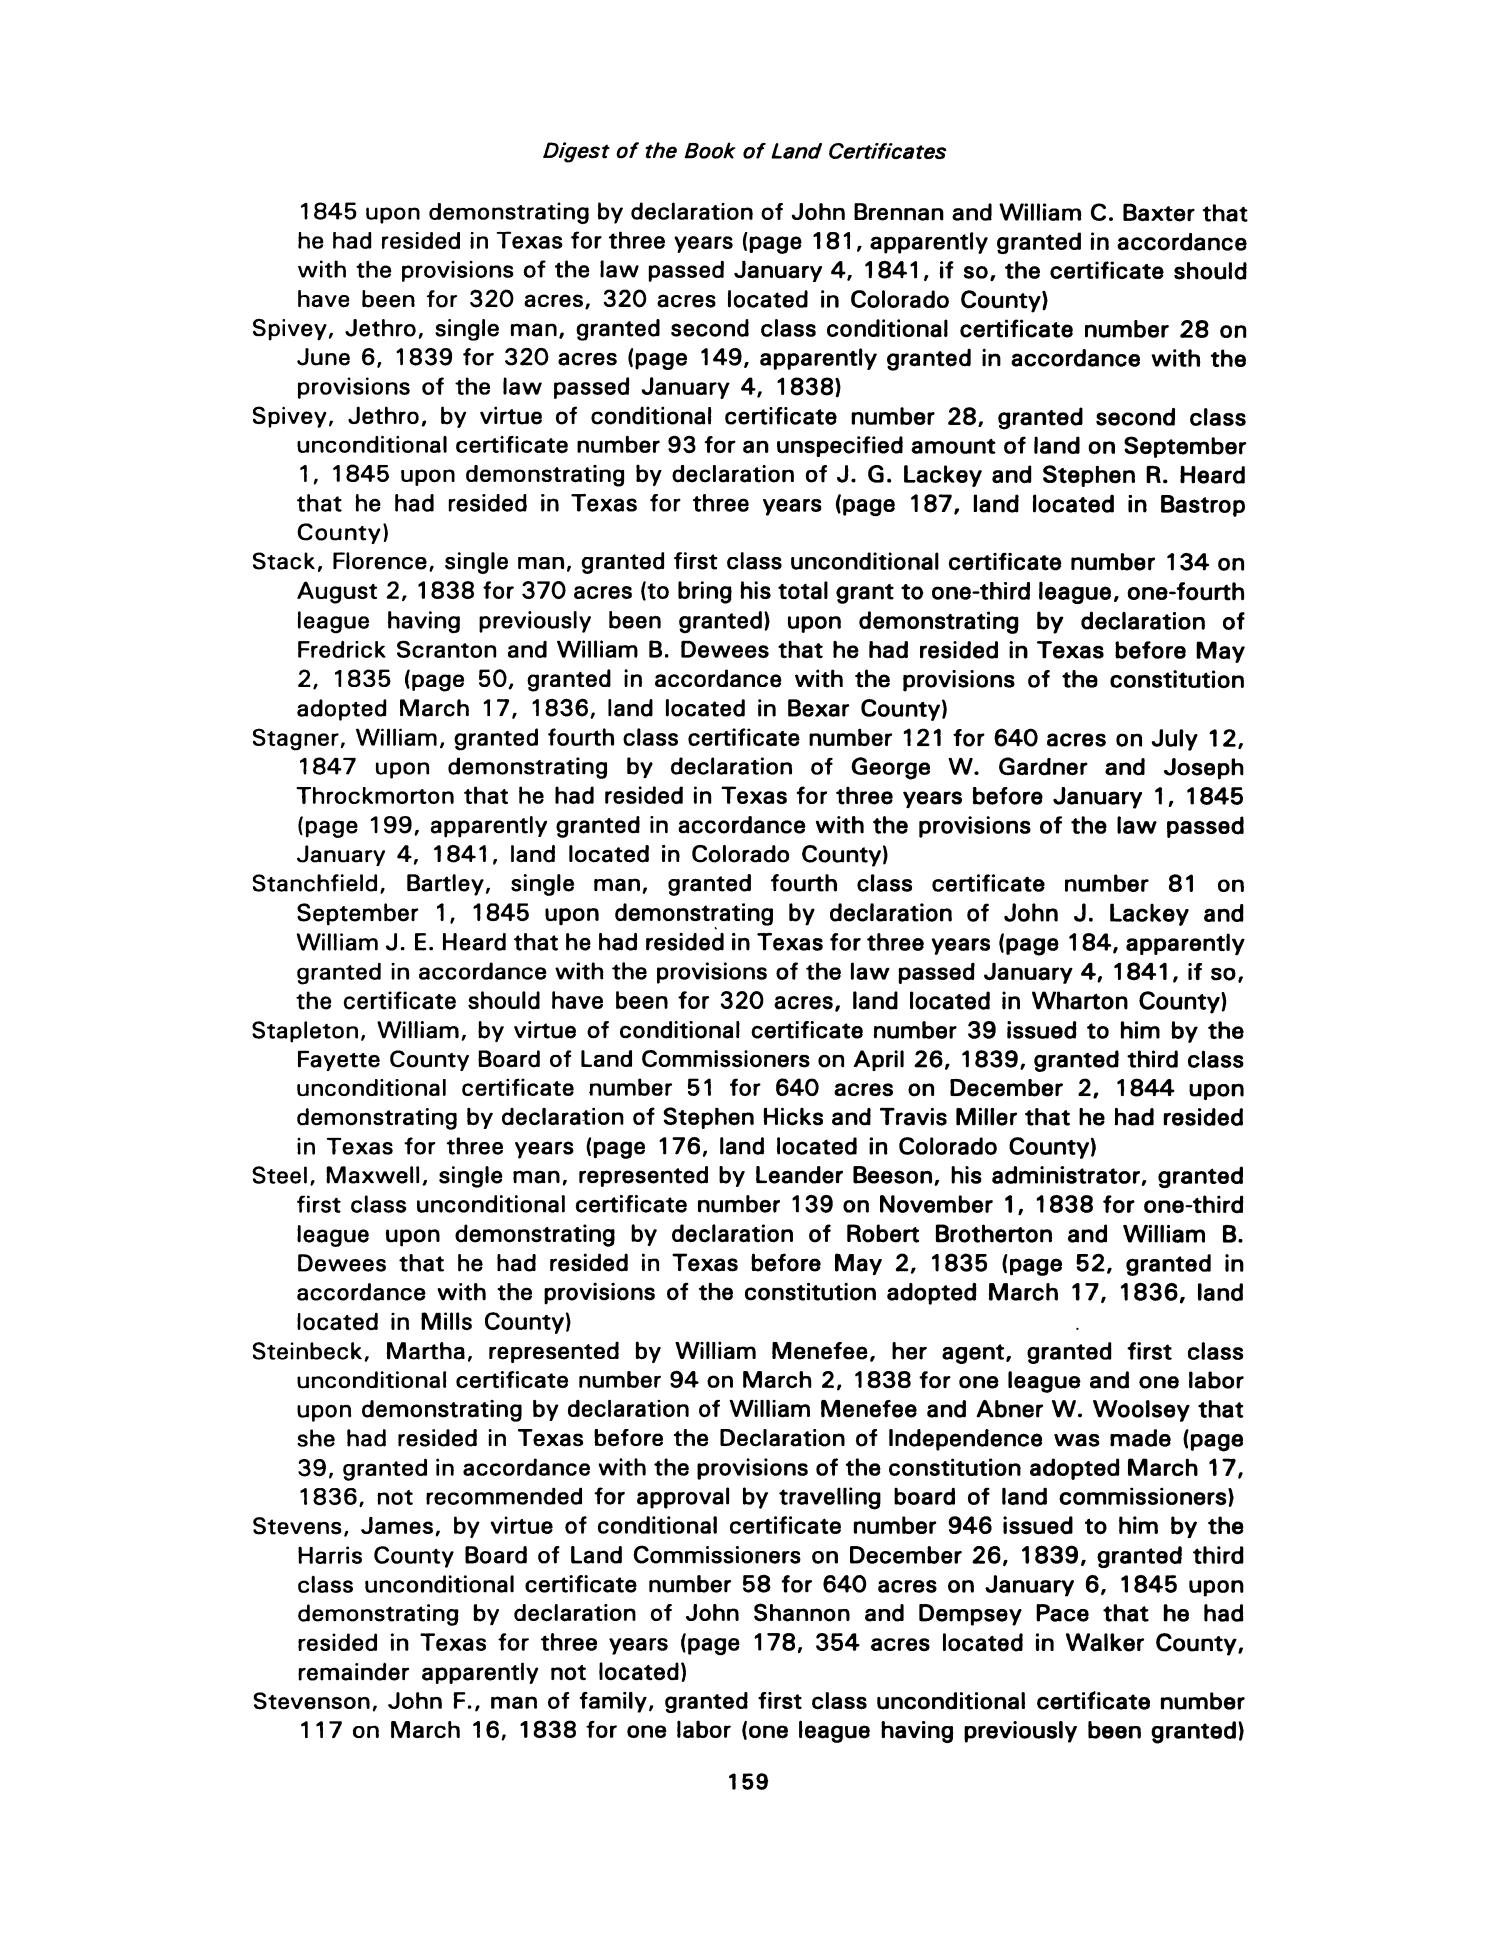 Nesbitt Memorial Library Journal, Volume 3, Number 3, September 1993
                                                
                                                    159
                                                